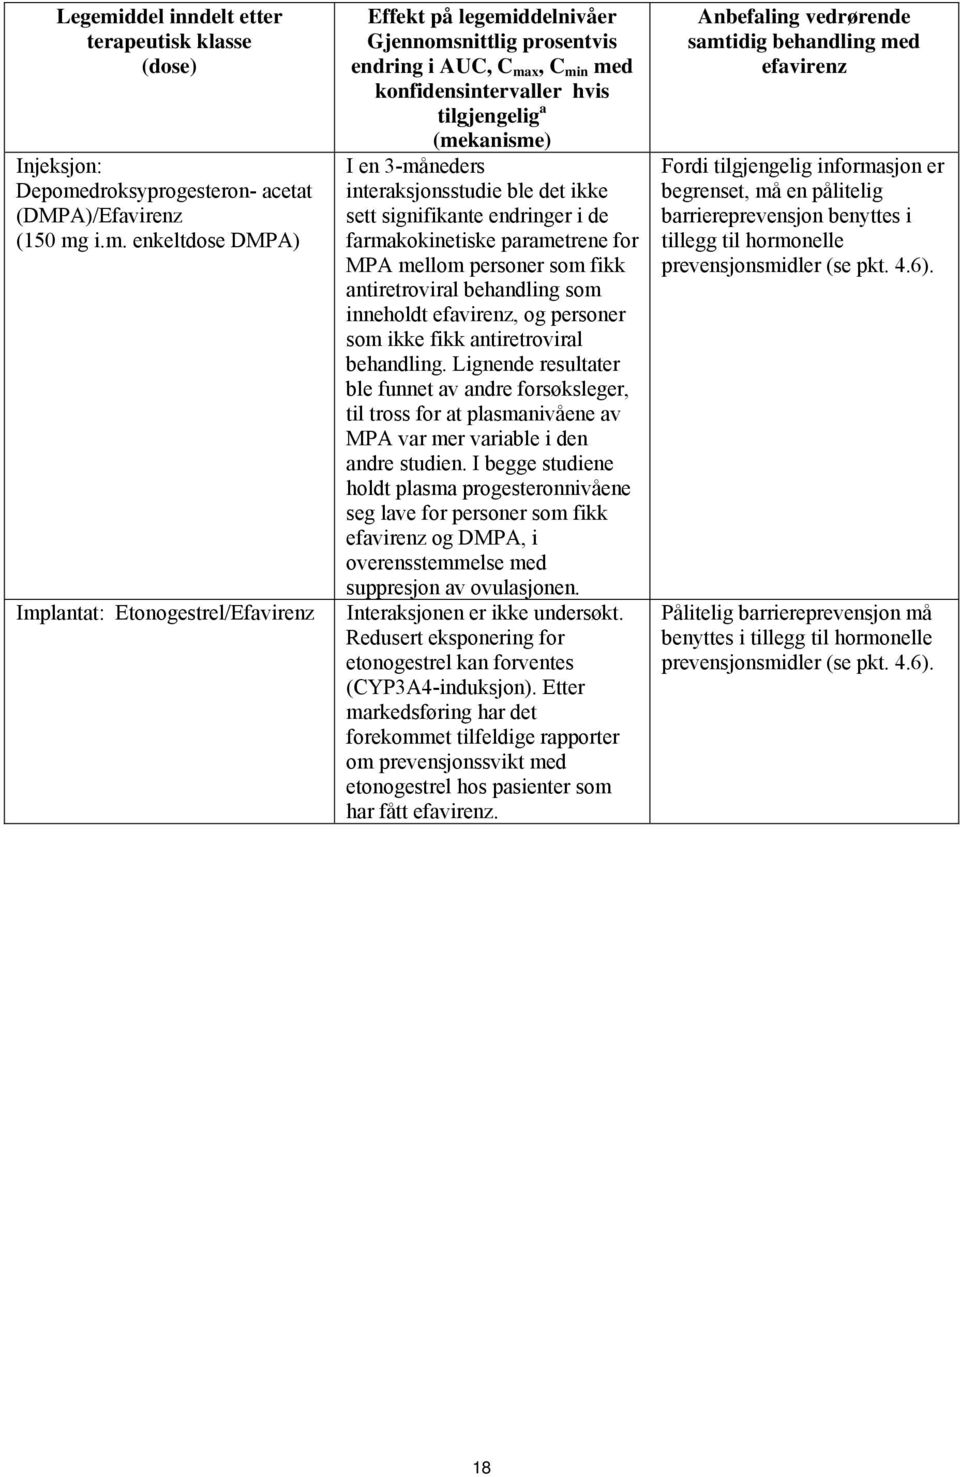 droksyprogesteron- acetat (DMPA)/Efavirenz (150 mg